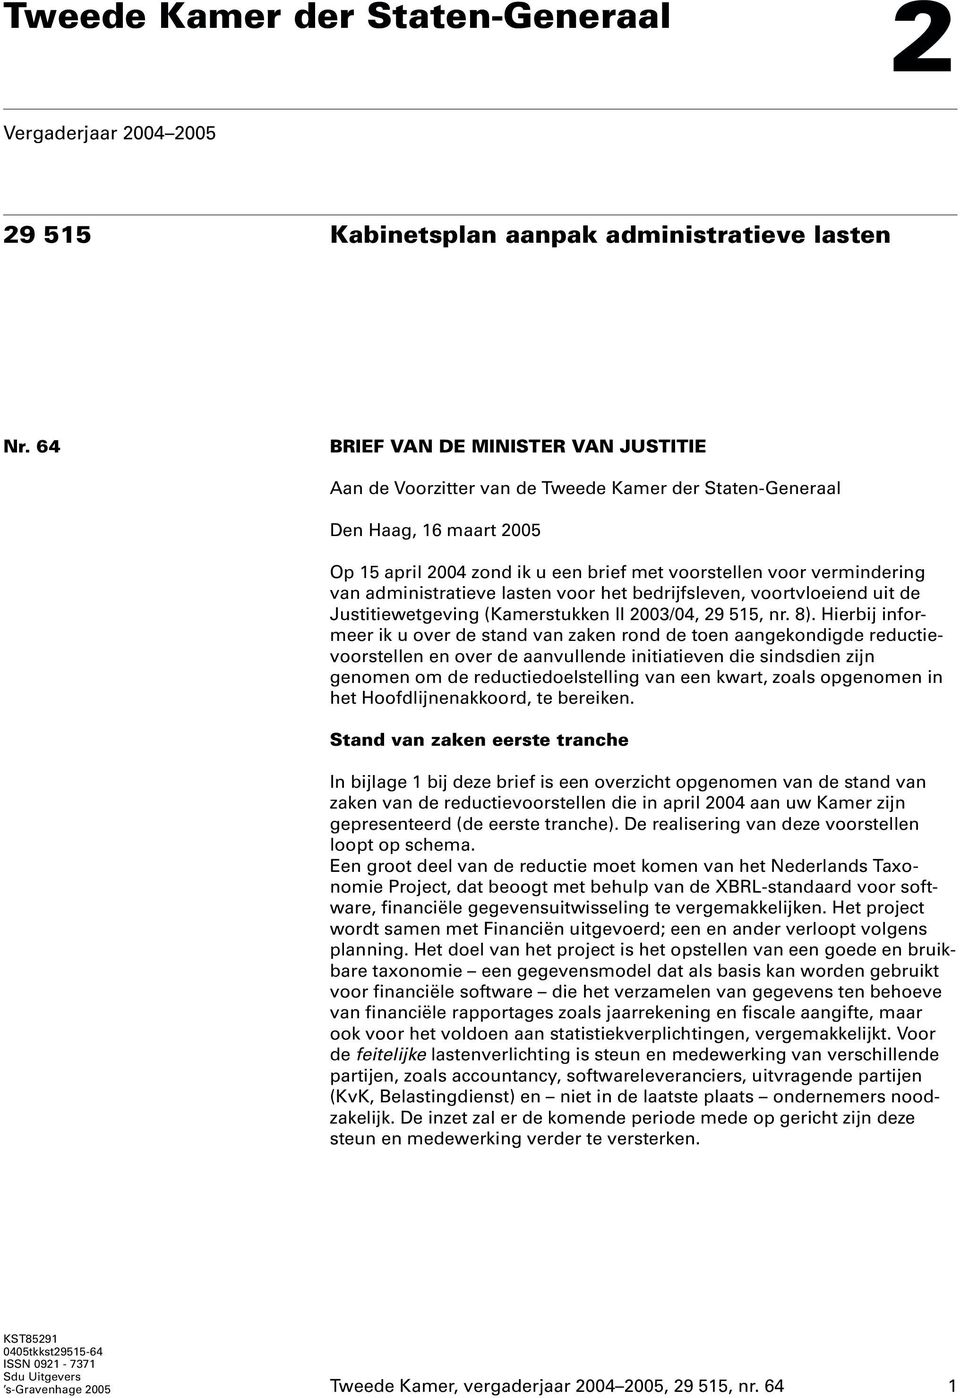 administratieve lasten voor het bedrijfsleven, voortvloeiend uit de Justitiewetgeving (Kamerstukken II 2003/04, 29 515, nr. 8).